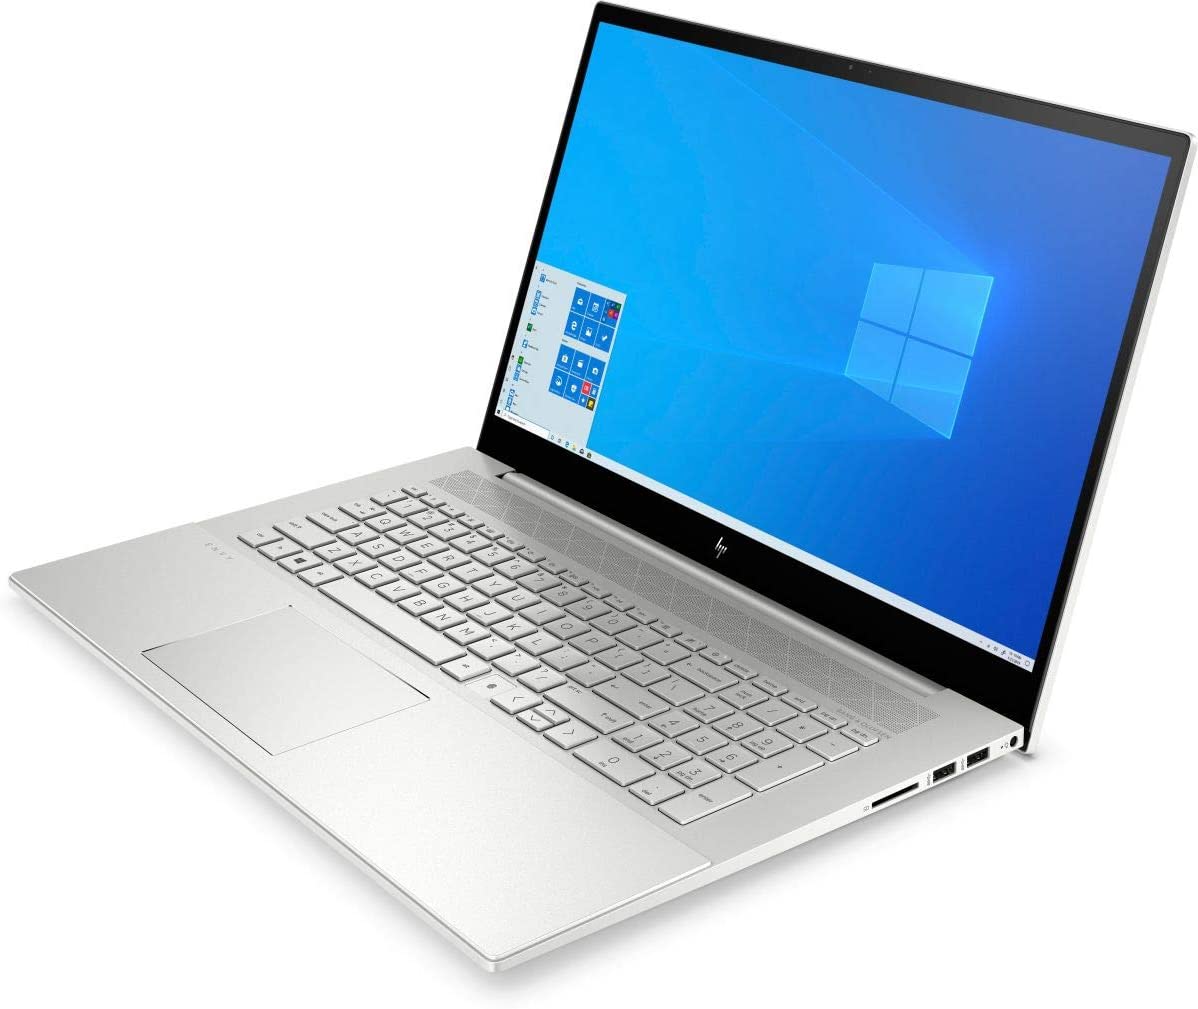 HP Envy 17t-cg000 Premium-Class 17.3" Laptop - Laptop PC Specs